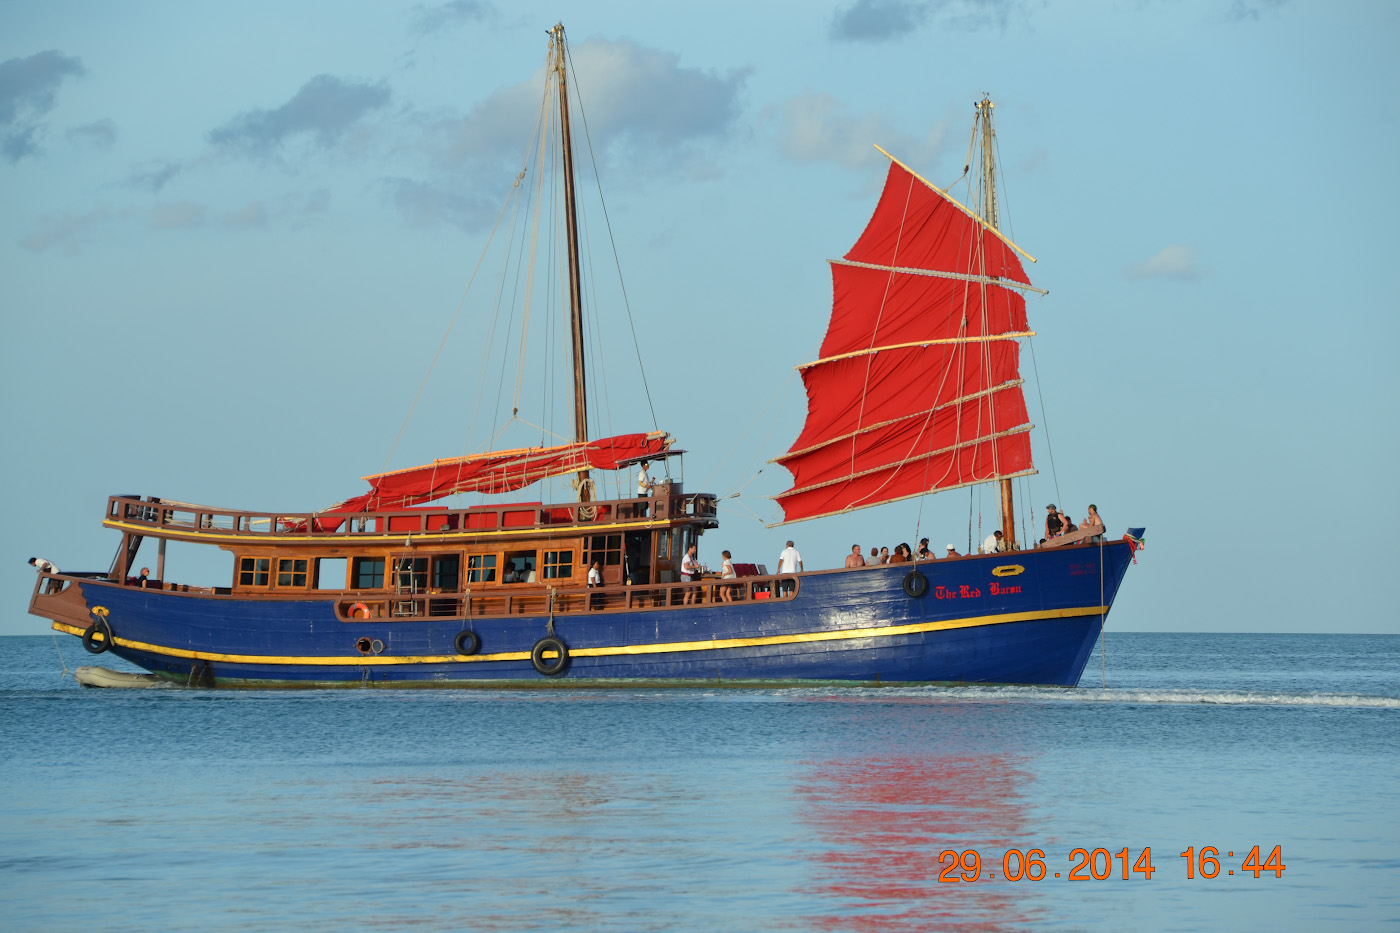 Фото 4. Прогулочный корабль, на котором можно отправиться на экскурсию по островам Таиланда. 1/250, 8.0, 100, 120.